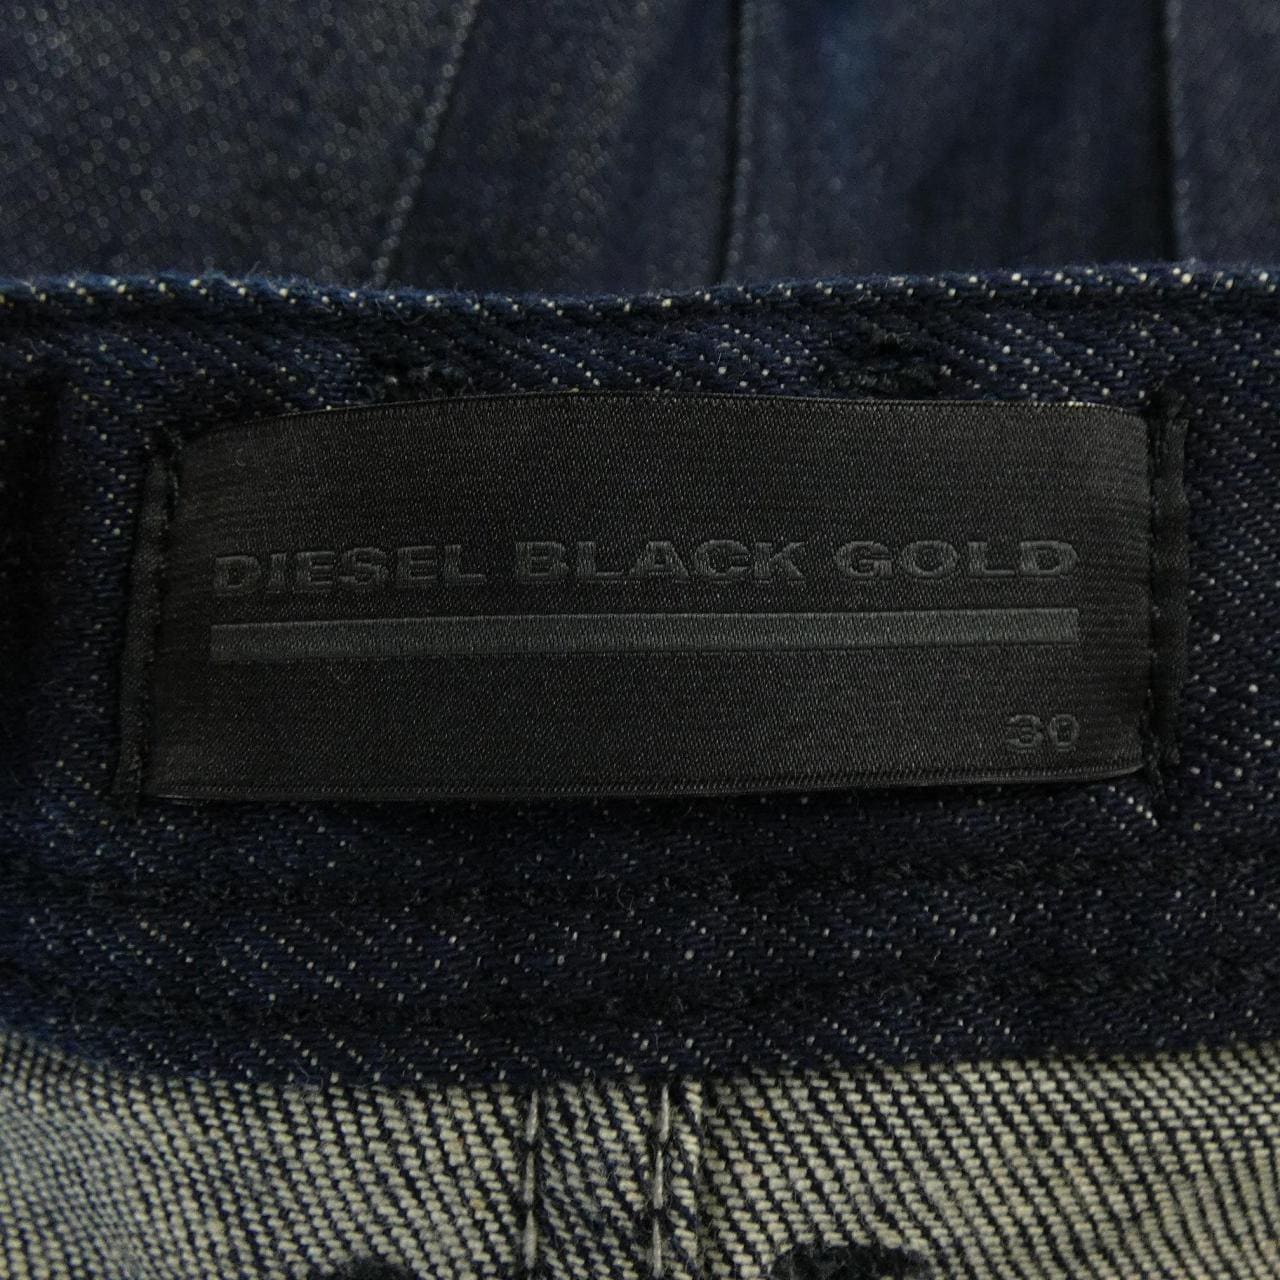 柴油黑金DIESEL BLACK GOLD牛仔裤